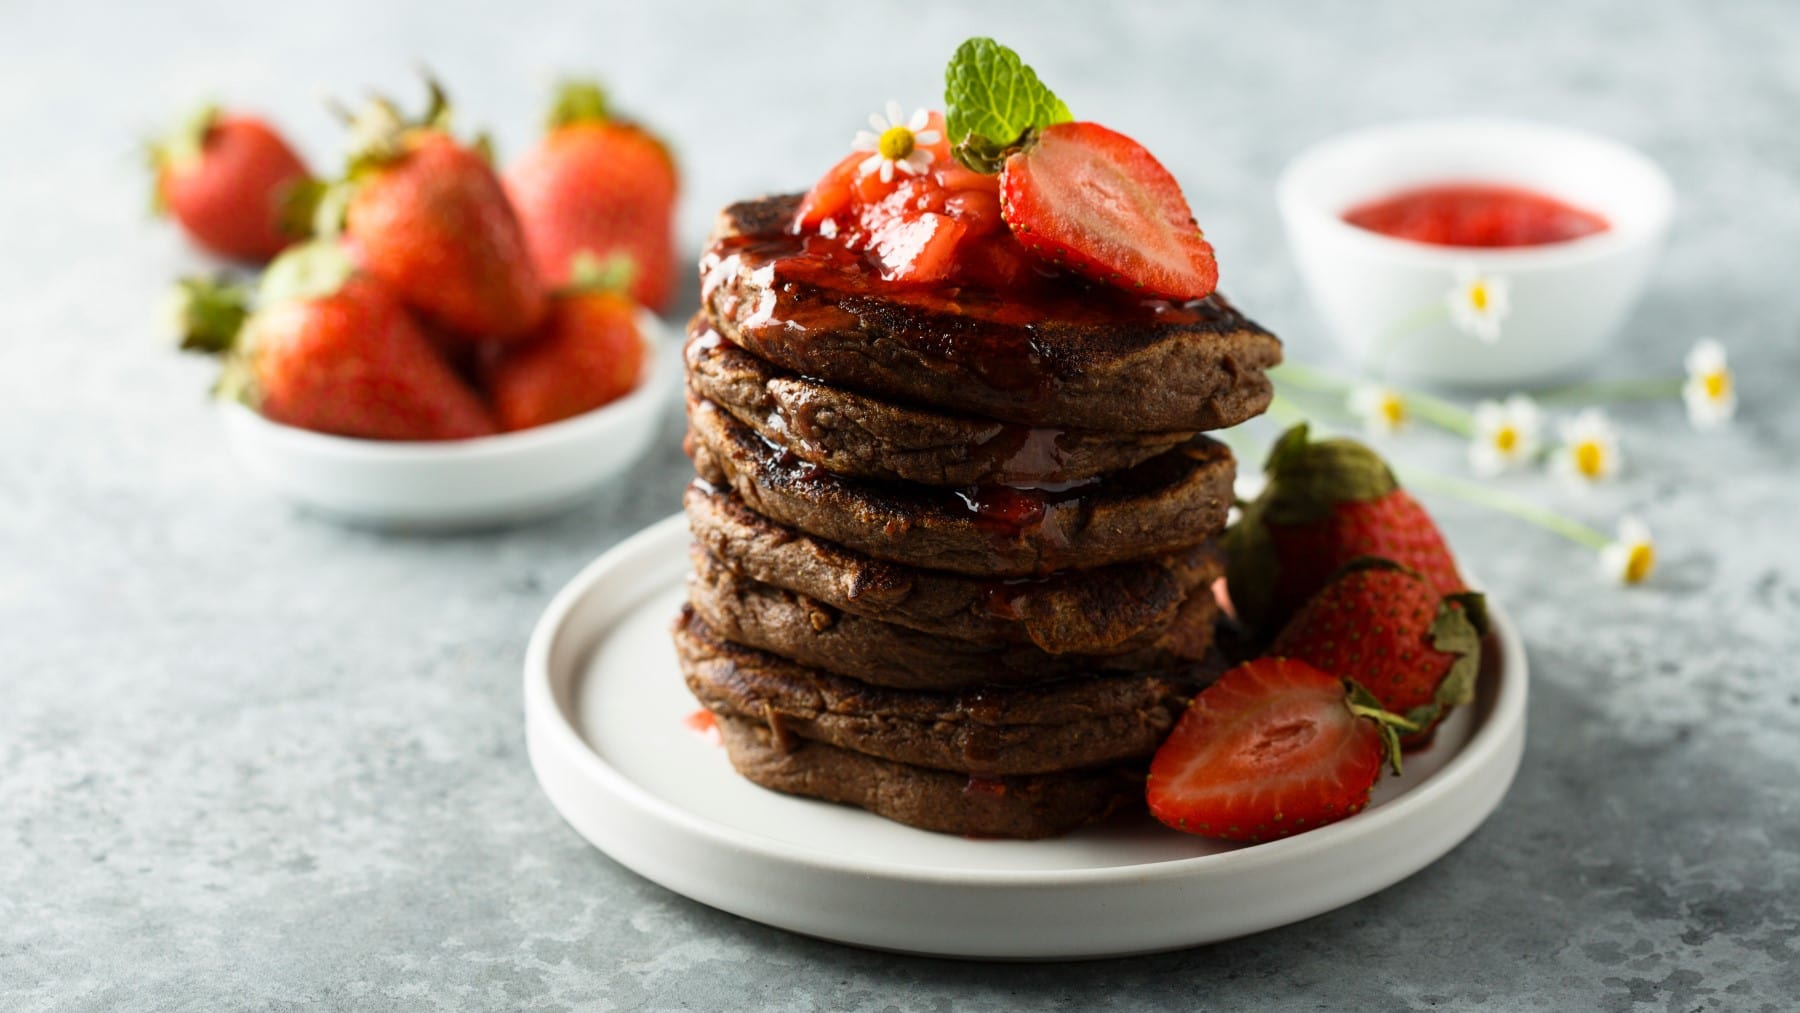 Vegane Schoko-Pancakes mit Erdbeersauce und frischen Erdbeeren auf einem weißen Teller, im Hintergrund mehr Erdbeeren, alles auf hellgrauem Untergrund.